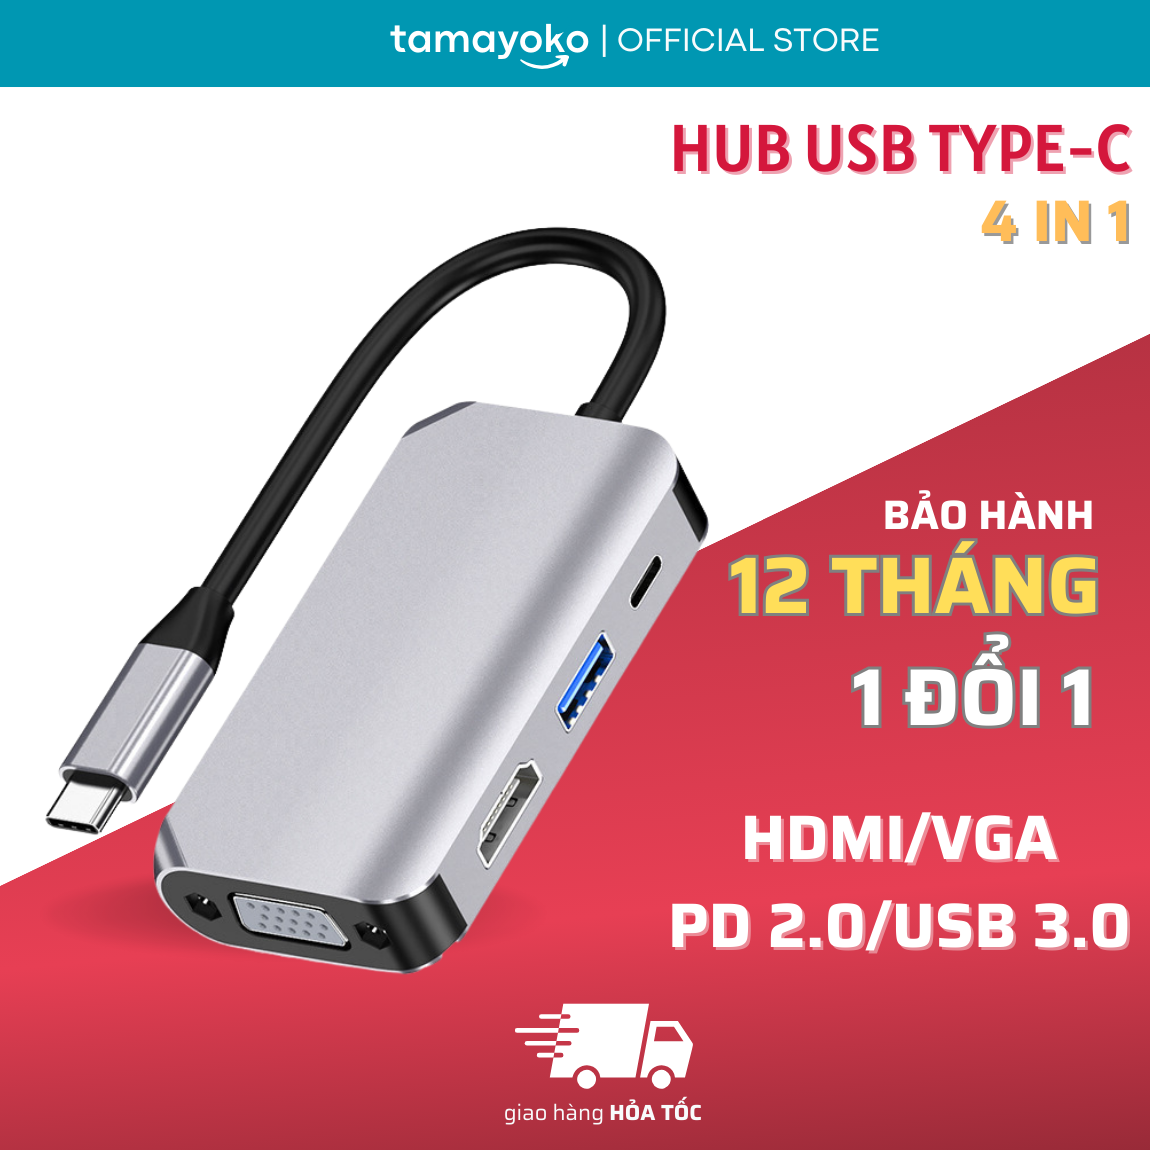 Hub Chuyển Đổi Type-C Chia 4 Cổng (4 in 1) HDMI/VGA/PD 2.0/USB 3.0 - Hàng Chính Hãng Tamayoko